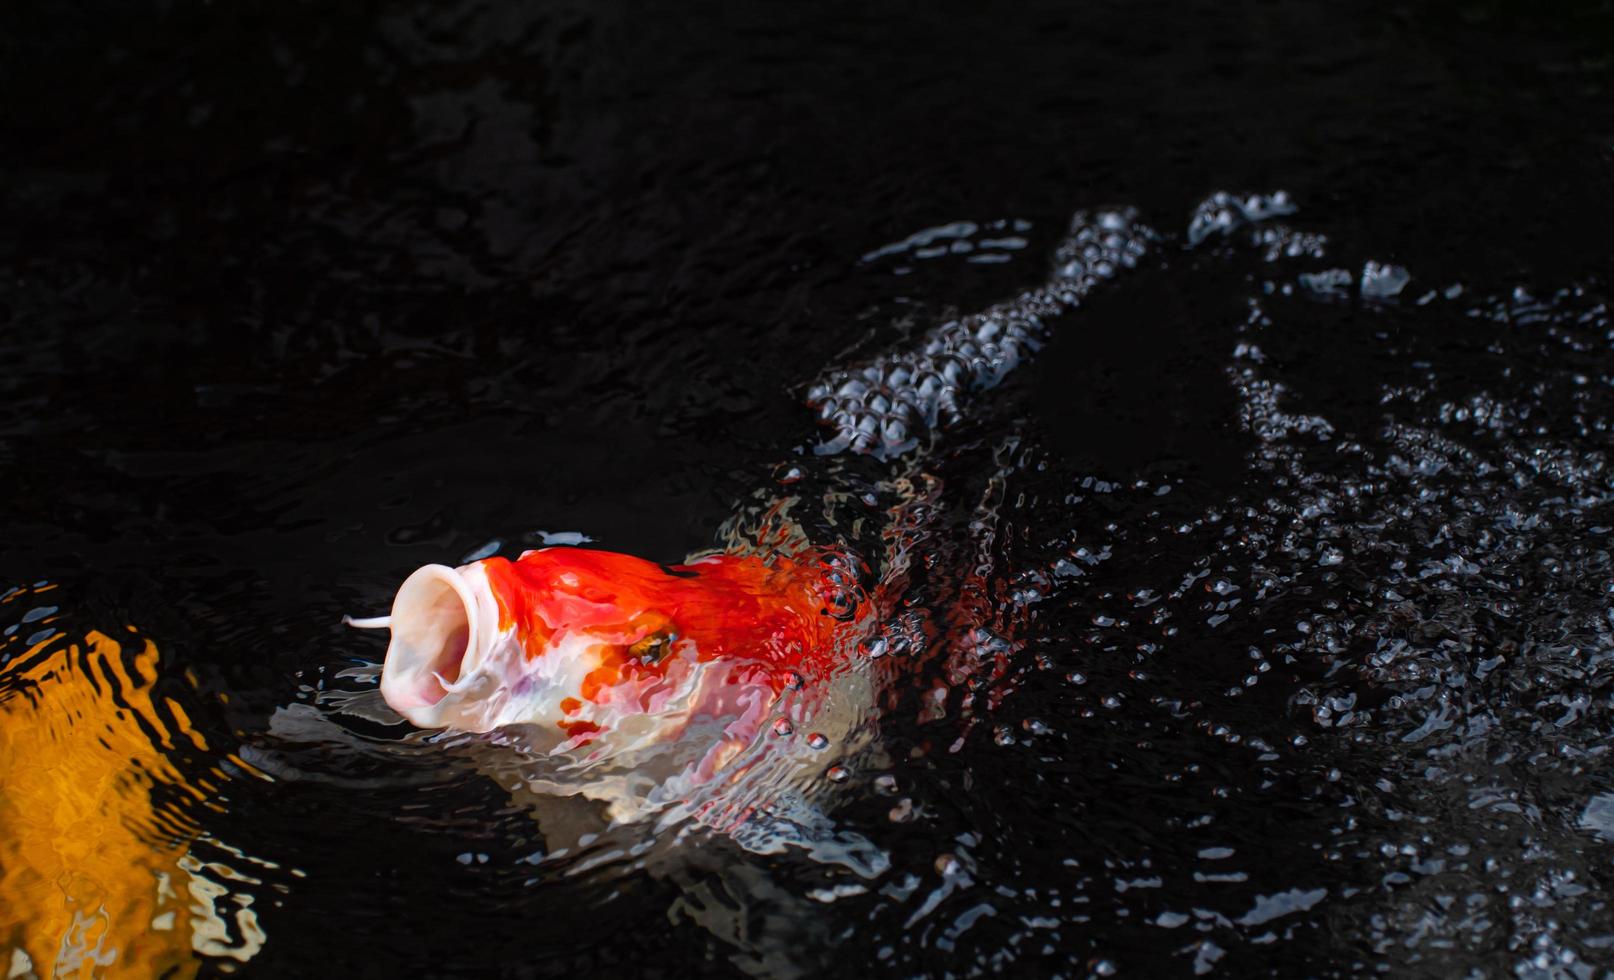 um peixe koi ou uma embarcação extravagante salta da água. foco na boca está aberta para se preparar para comer. foto